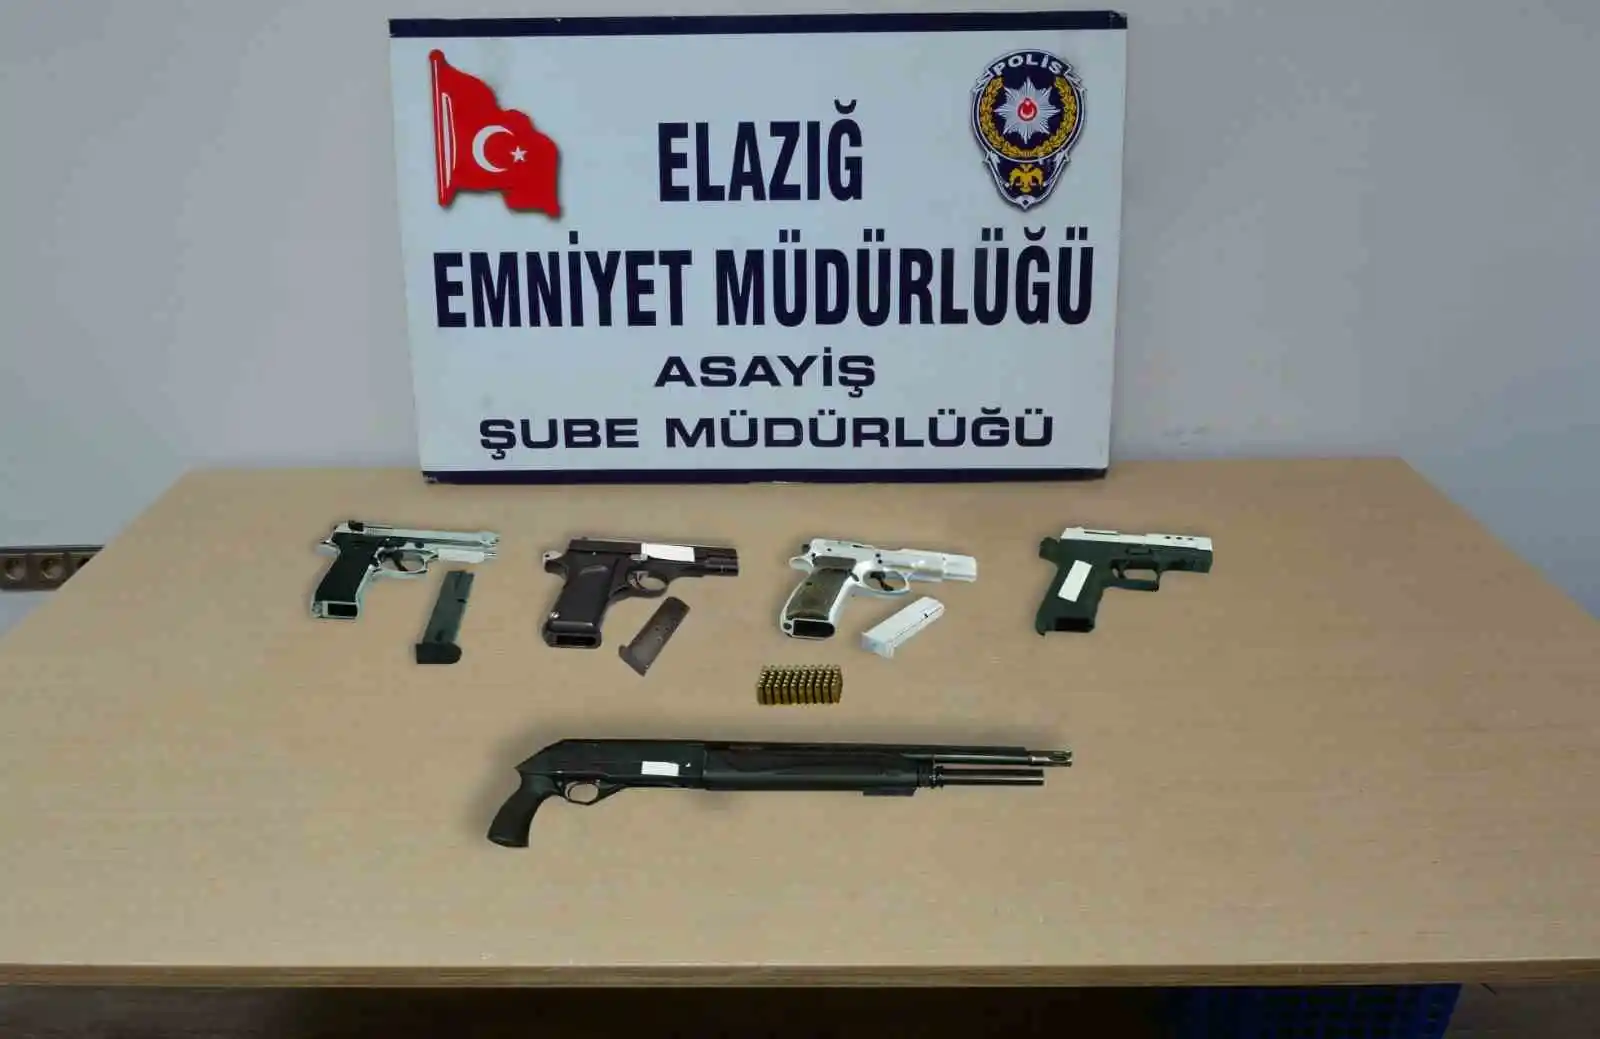 Elazığ'da asayiş ve şok uygulaması: 21 kişi tutuklandı
